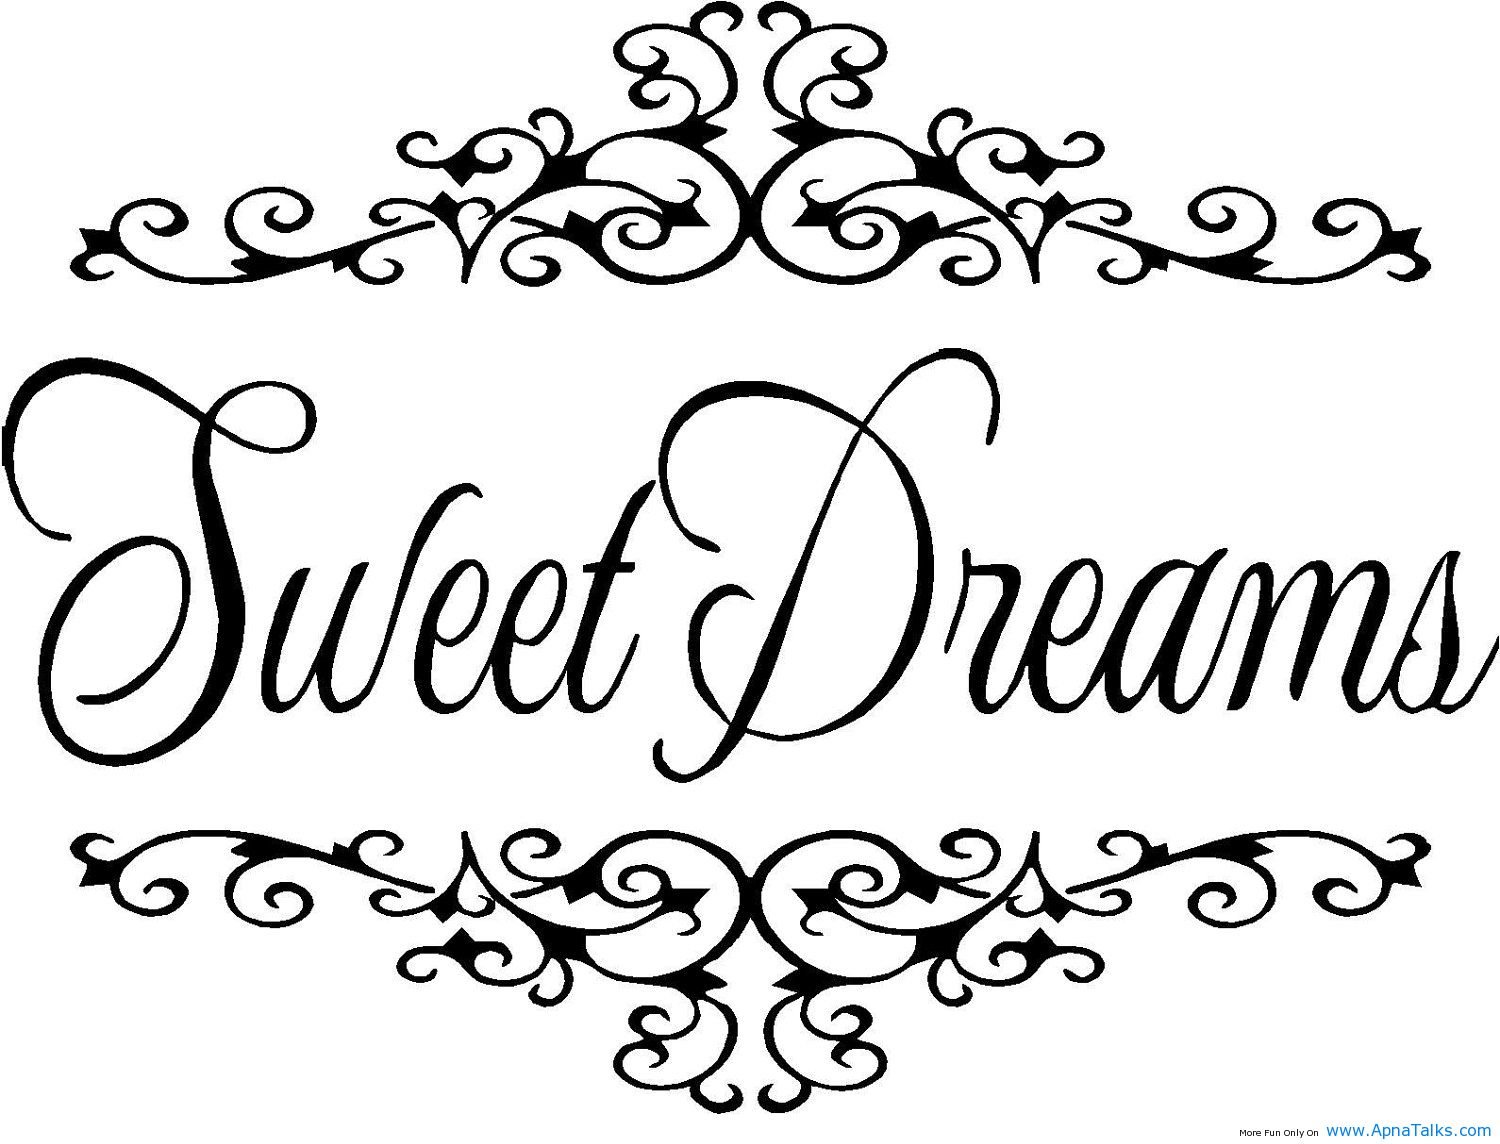 sweet-dreams-dreams-quotes